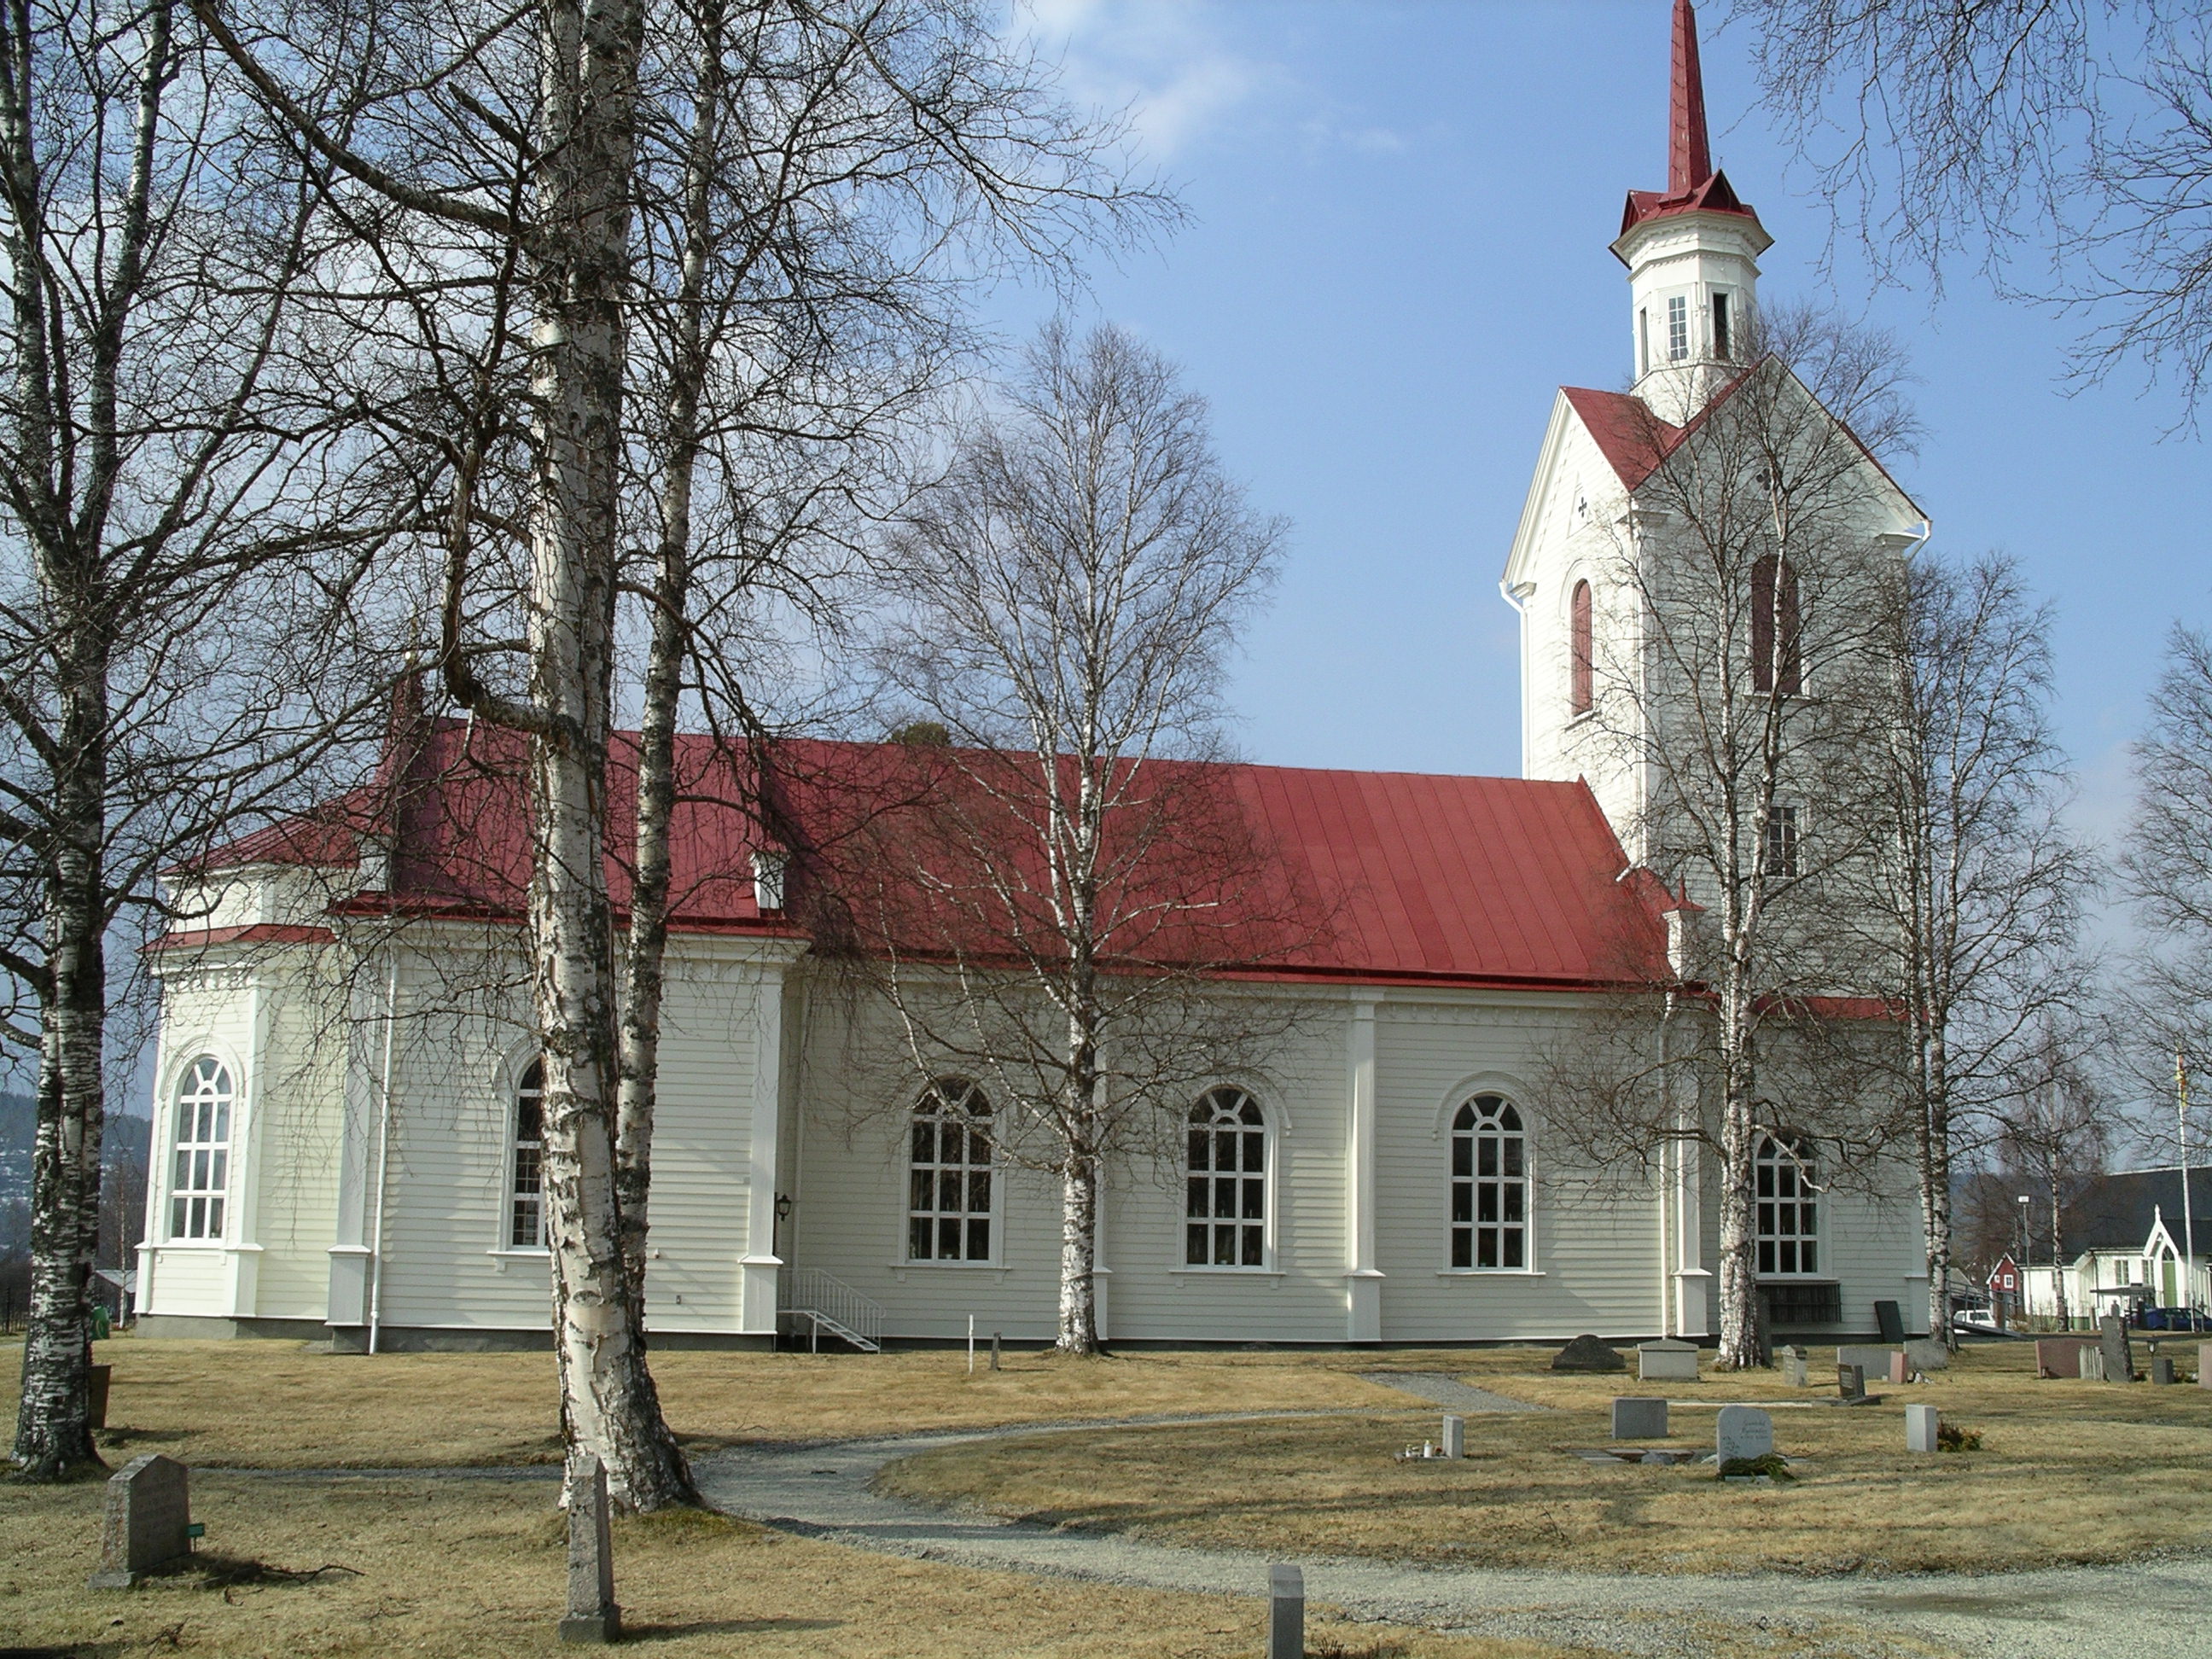 Rätans kyrka, fasad mot norr. 

Kyrkan inventerades mellan 2004-2005 av Martin Lagergren & Emelie Petersson, bebyggelseantikvarier från Jämtlands läns museum, de var även fotografer till bilderna. 
